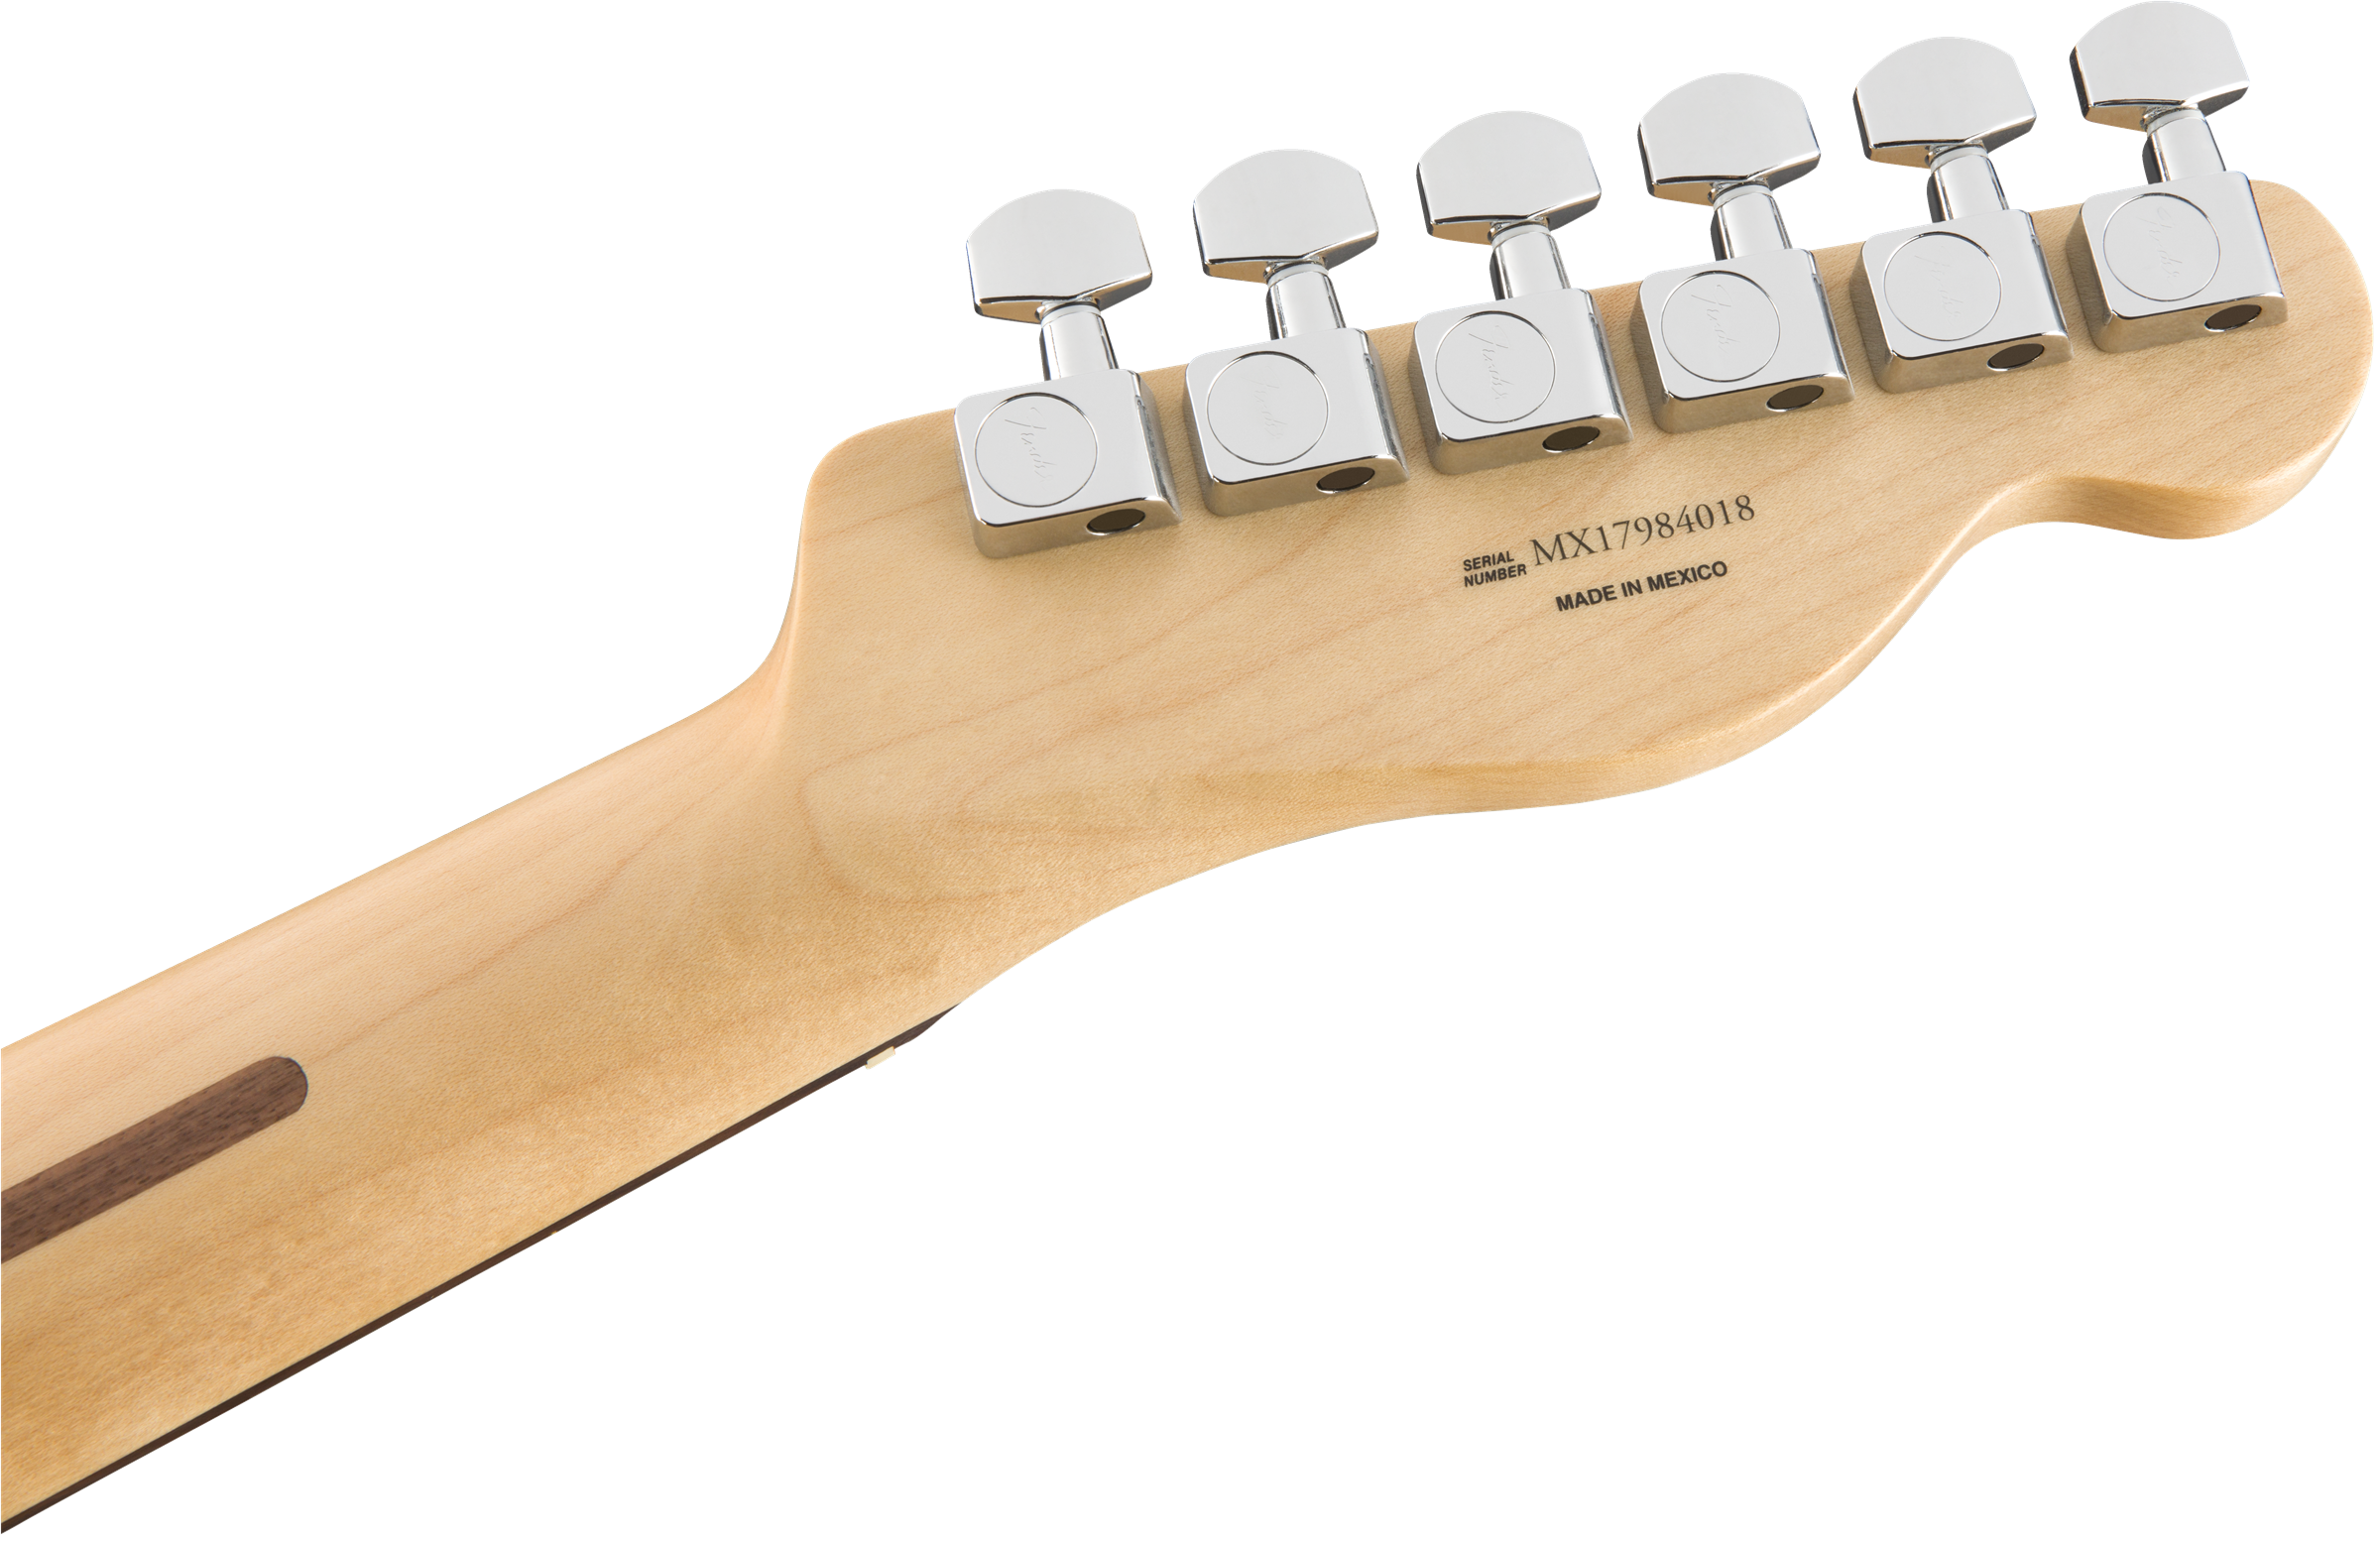 Fender Player Telecaster Left Handed Polar White 0145223515